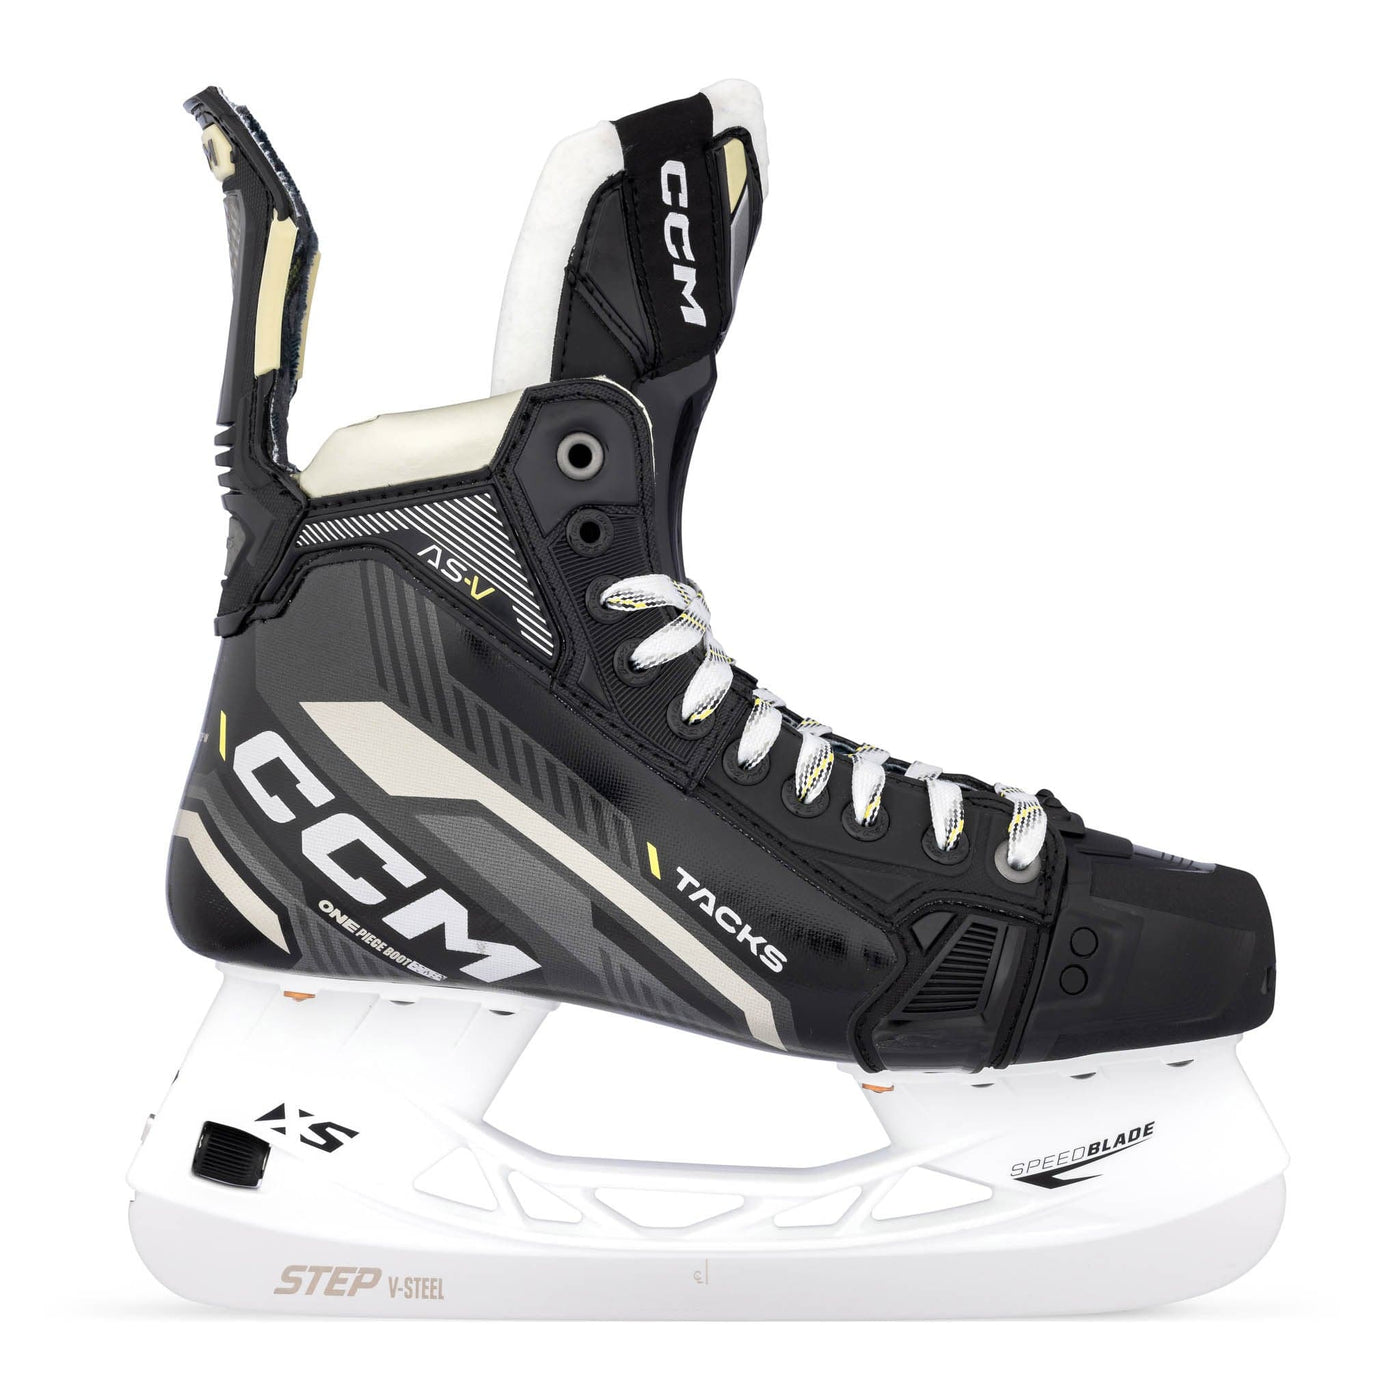 CCM Tacks AS-V Intermediate Hockey Skates - The Hockey Shop Source For Sports